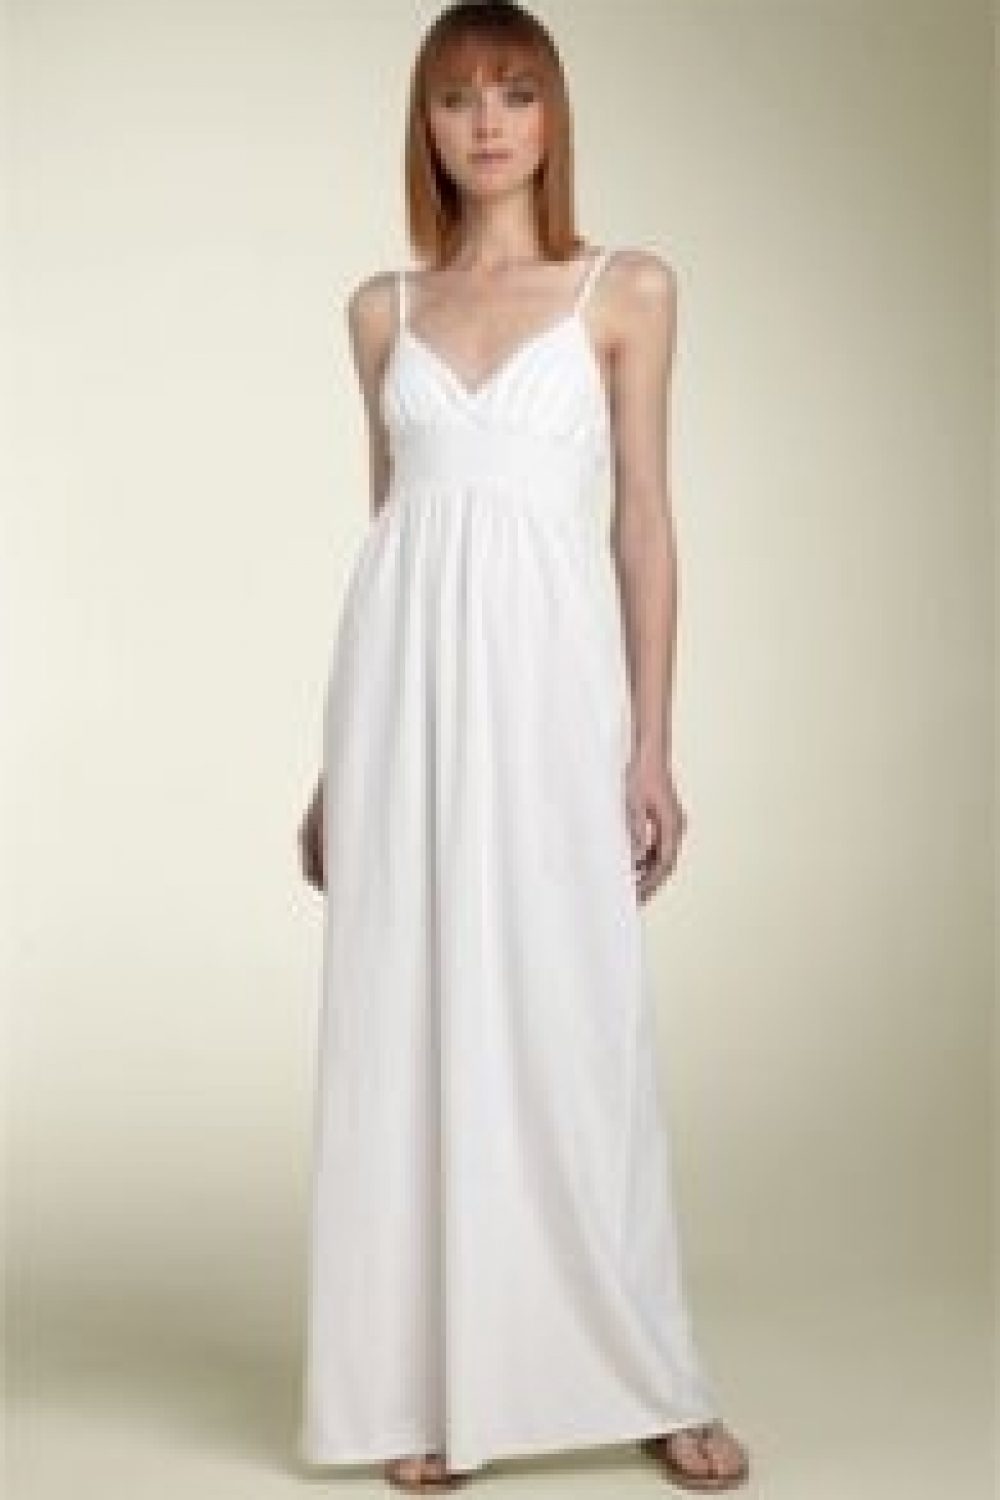 A White Dress Affair